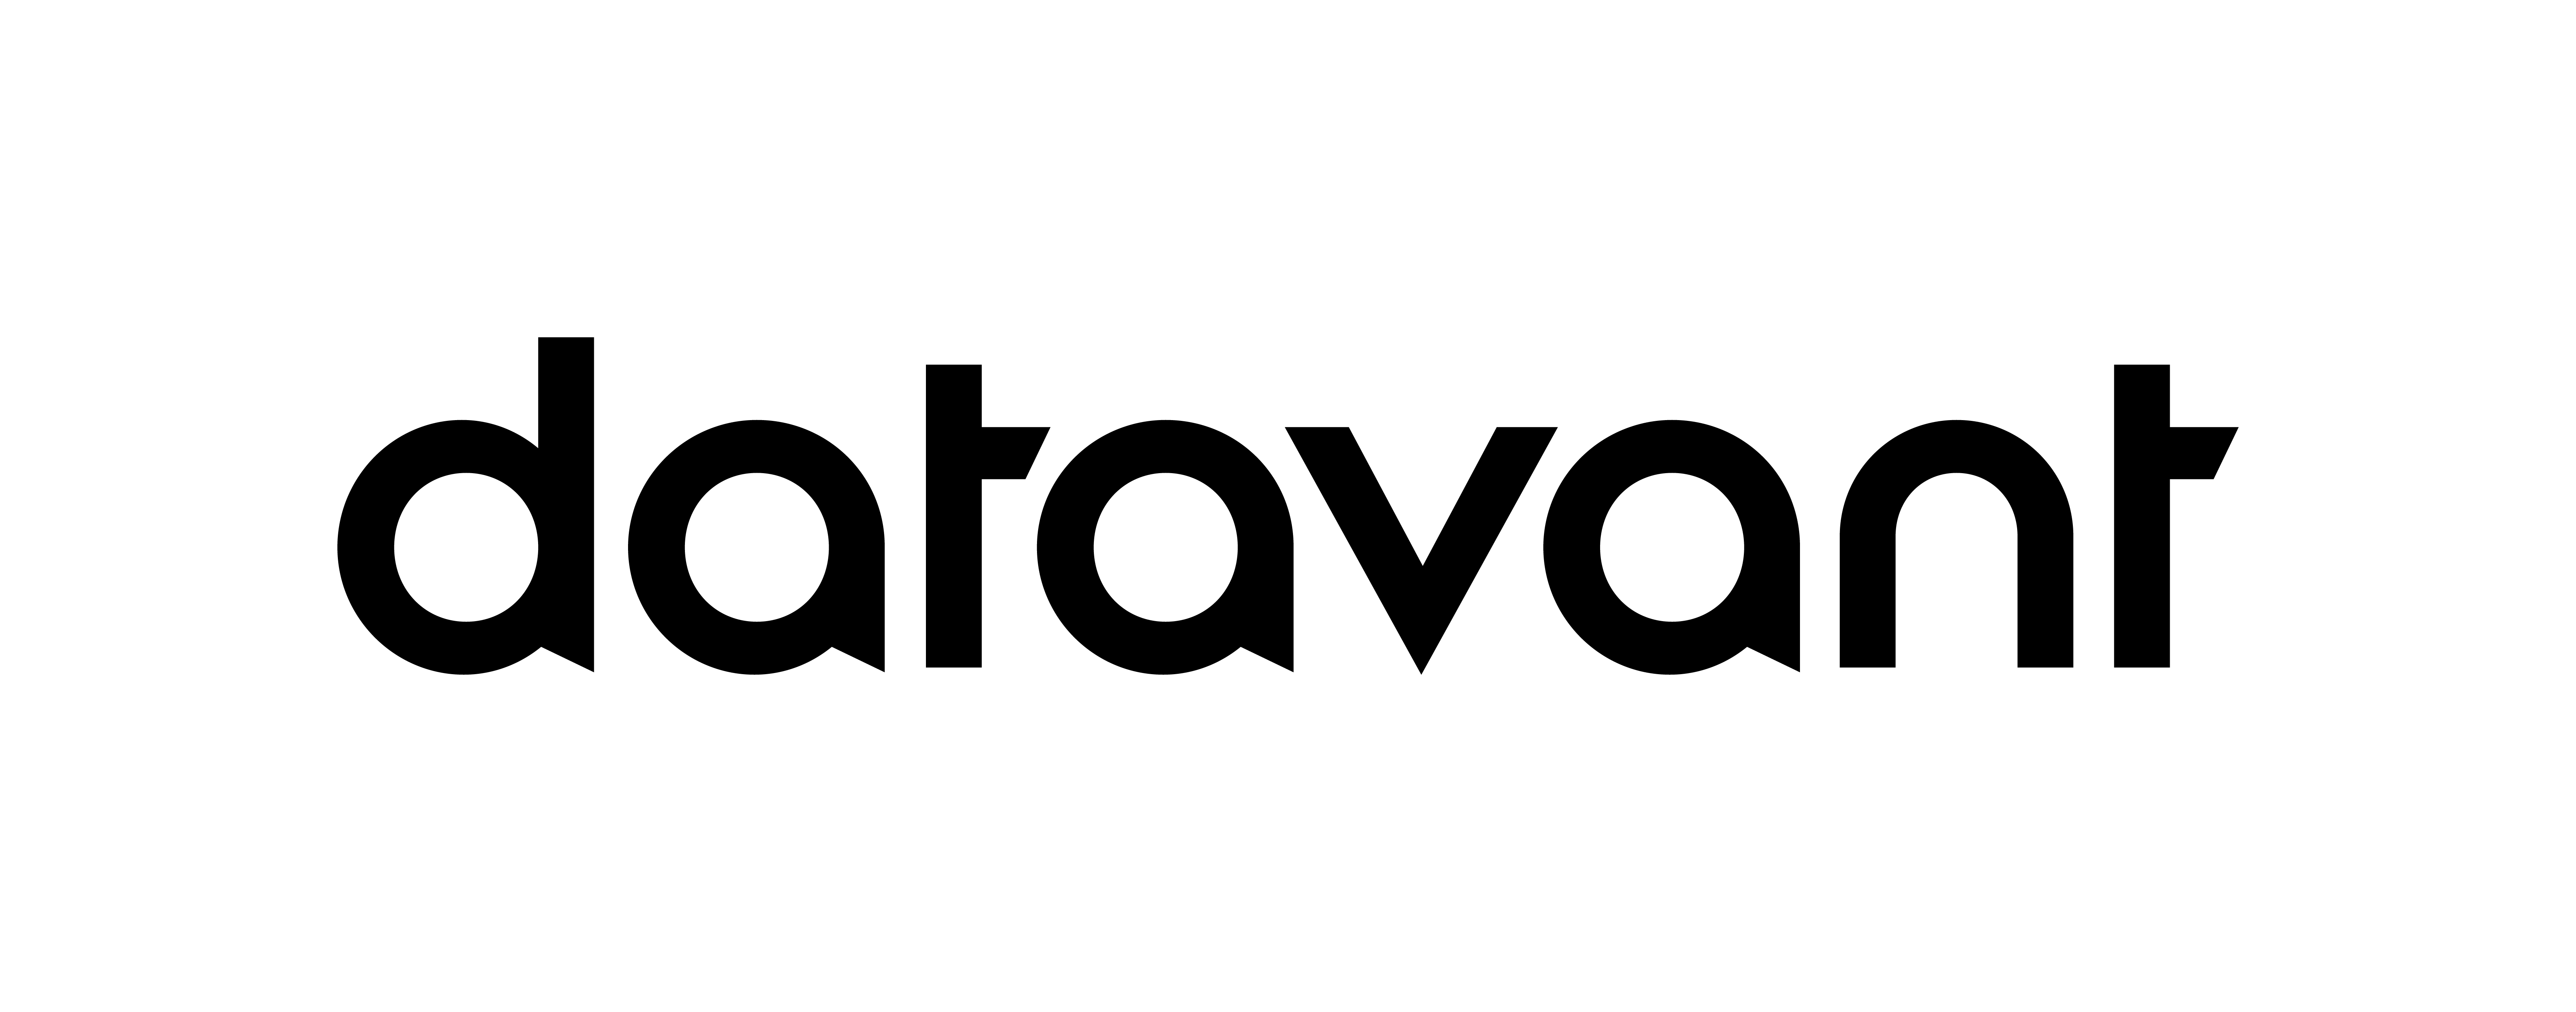 Final Datavant Logo Black